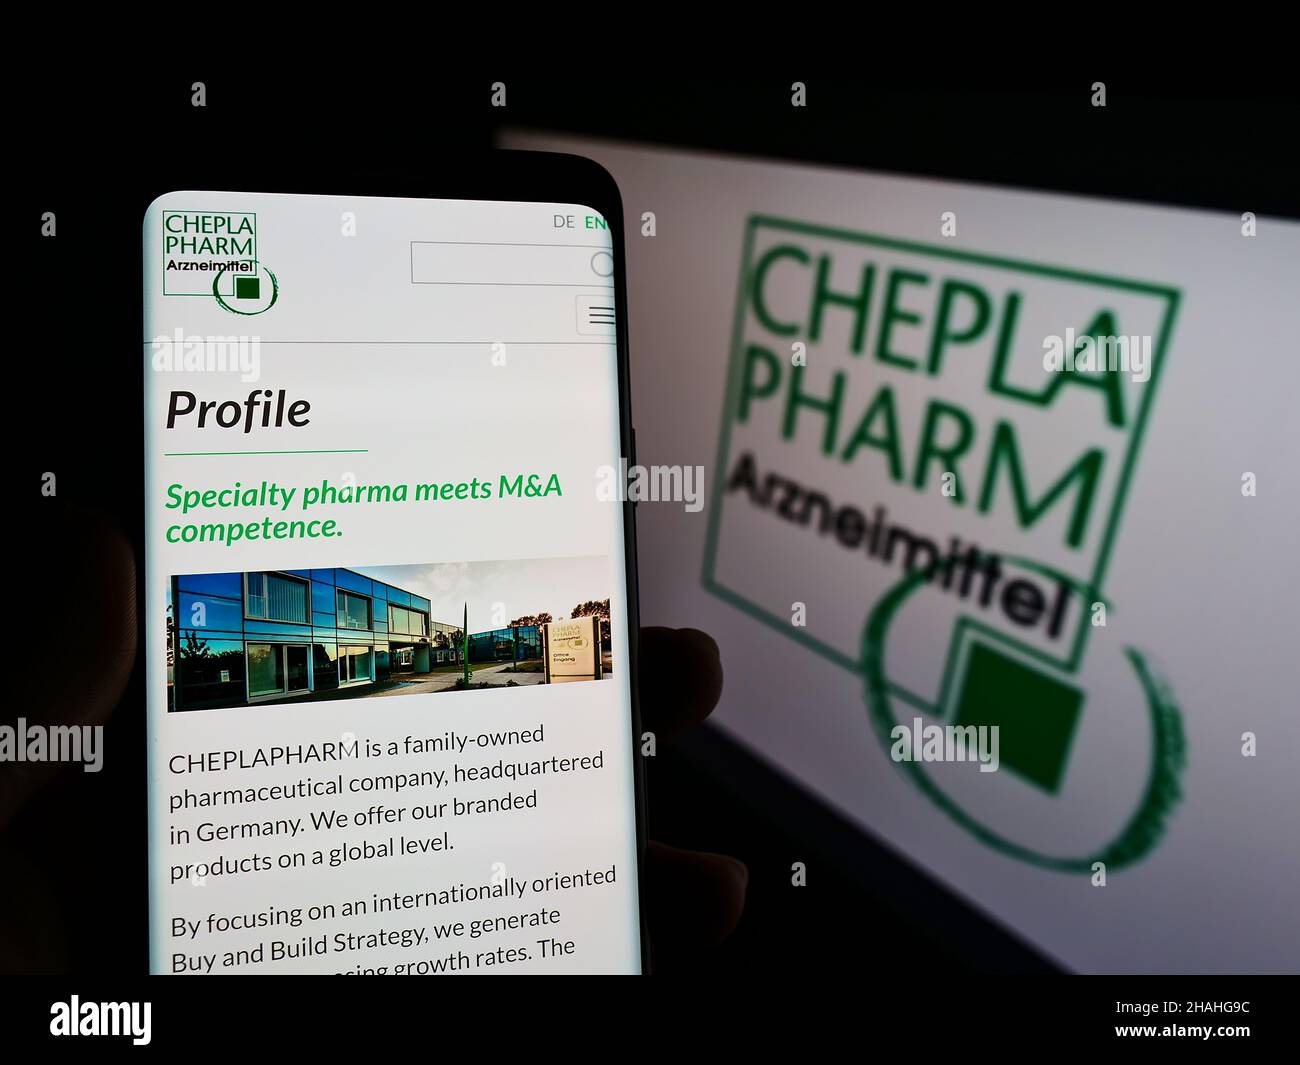 Personne tenant un téléphone portable avec le site Internet de la société pharmaceutique allemande Cheplapharm Arzneimittel GmbH sur écran avec logo.Concentrez-vous sur le centre de l'écran du téléphone. Banque D'Images